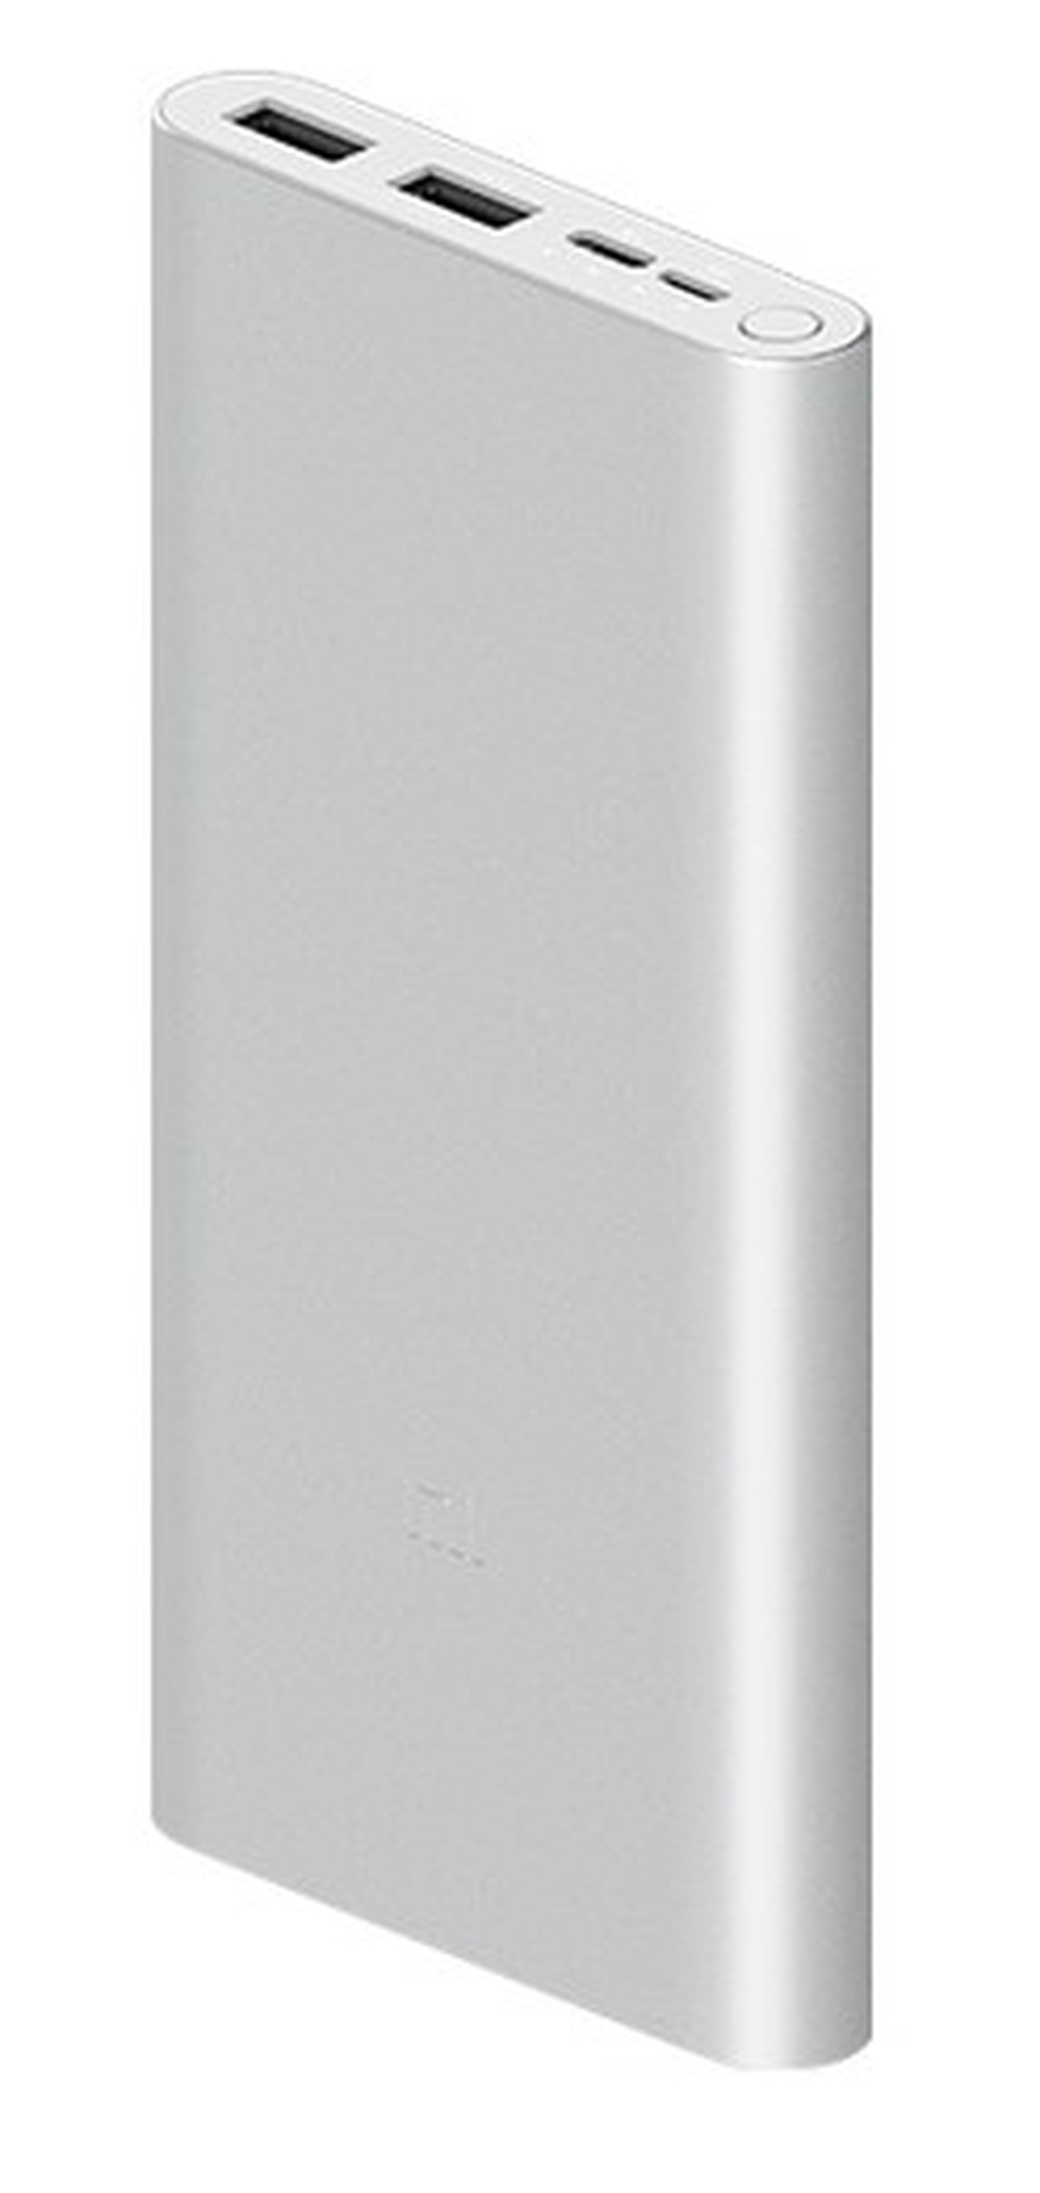 Xiaomi Power Bank 10000mah Silver